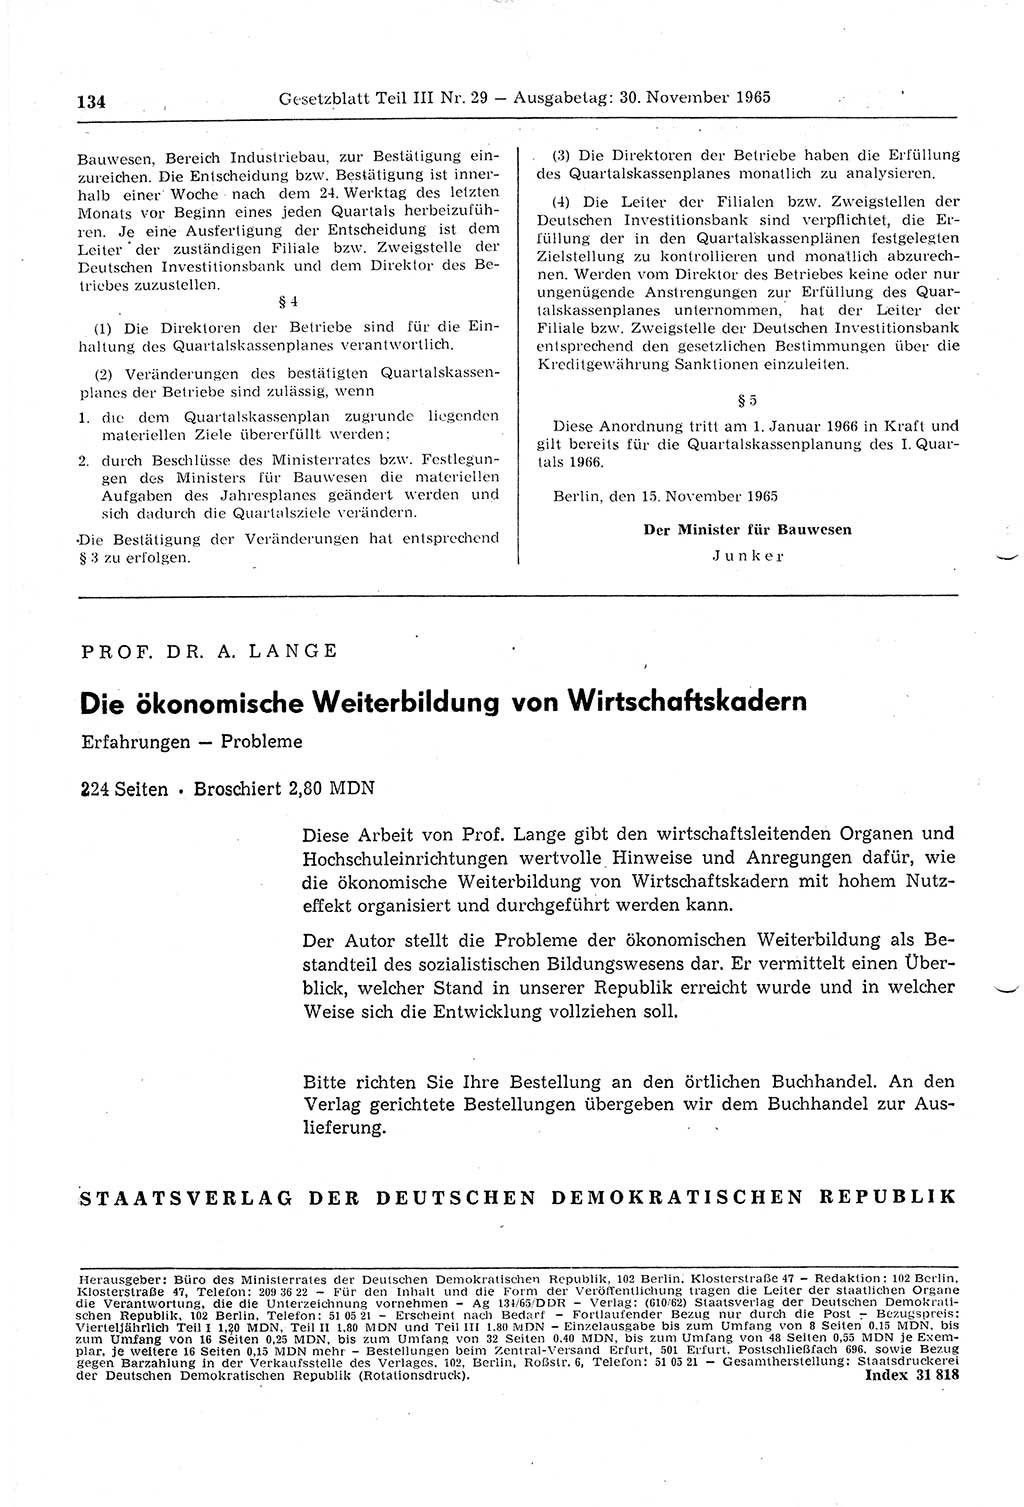 Gesetzblatt (GBl.) der Deutschen Demokratischen Republik (DDR) Teil ⅠⅠⅠ 1965, Seite 134 (GBl. DDR ⅠⅠⅠ 1965, S. 134)